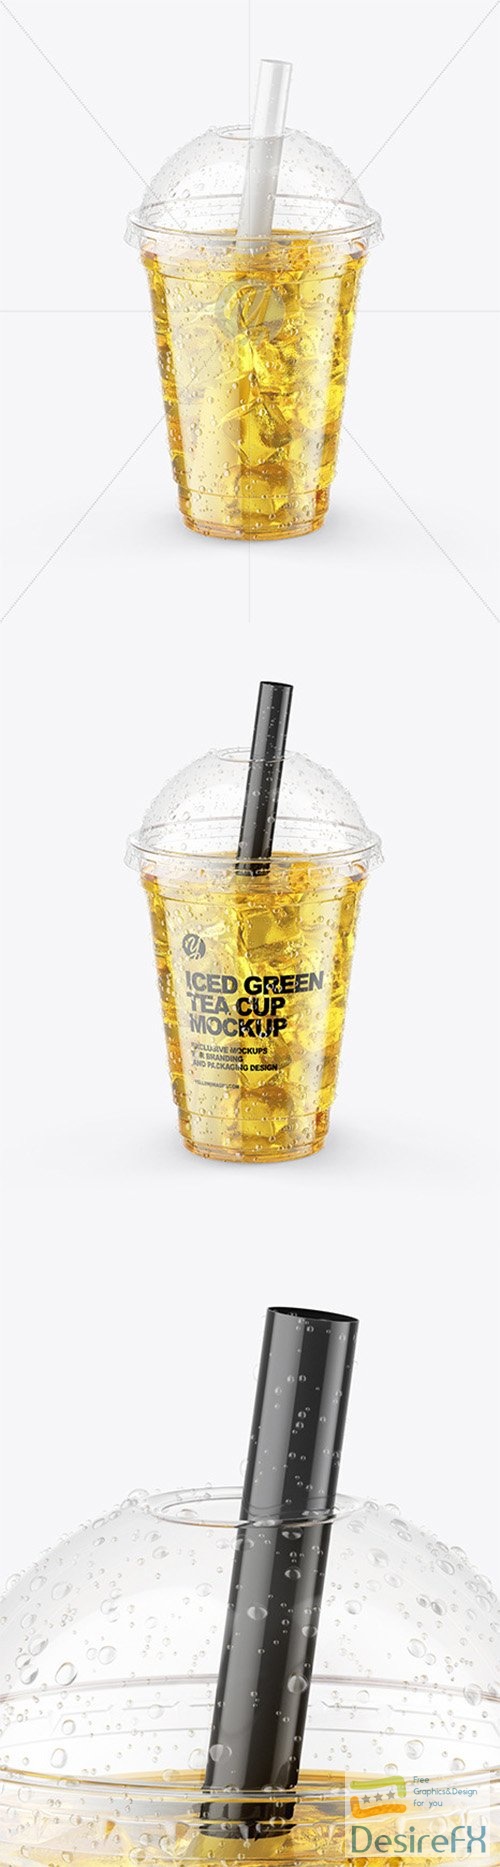 Iced Green Tea Cup Mockup 64942 TIF